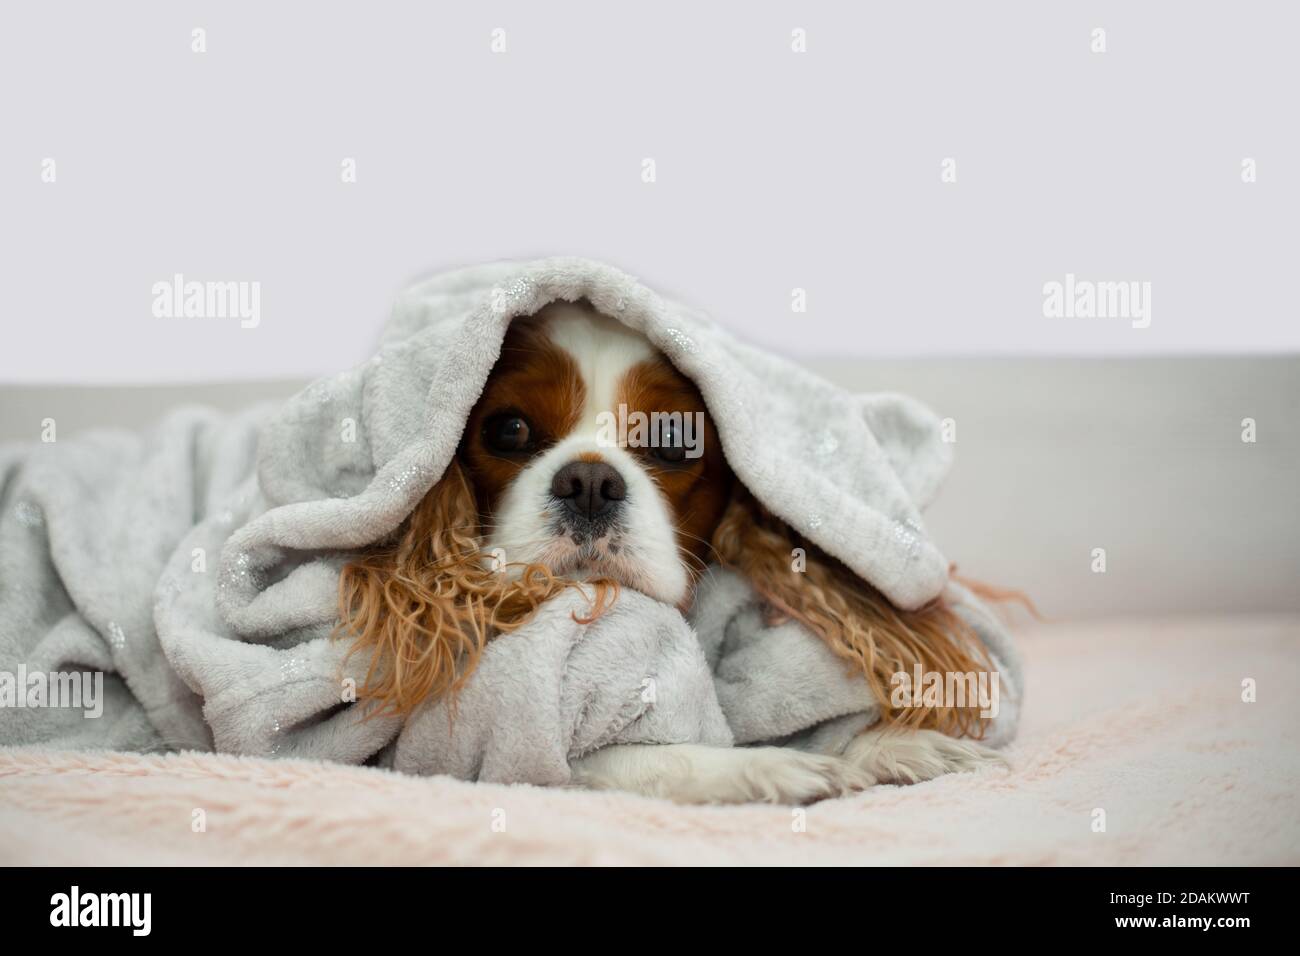 Ein süßer Hund Cavalier King Charles Spaniel mit großen Ohren liegt auf dem Bett auf einer leichten Decke in Kleidung mit Kapuze und freut sich traurig. Hygge-Stimmung Stockfoto